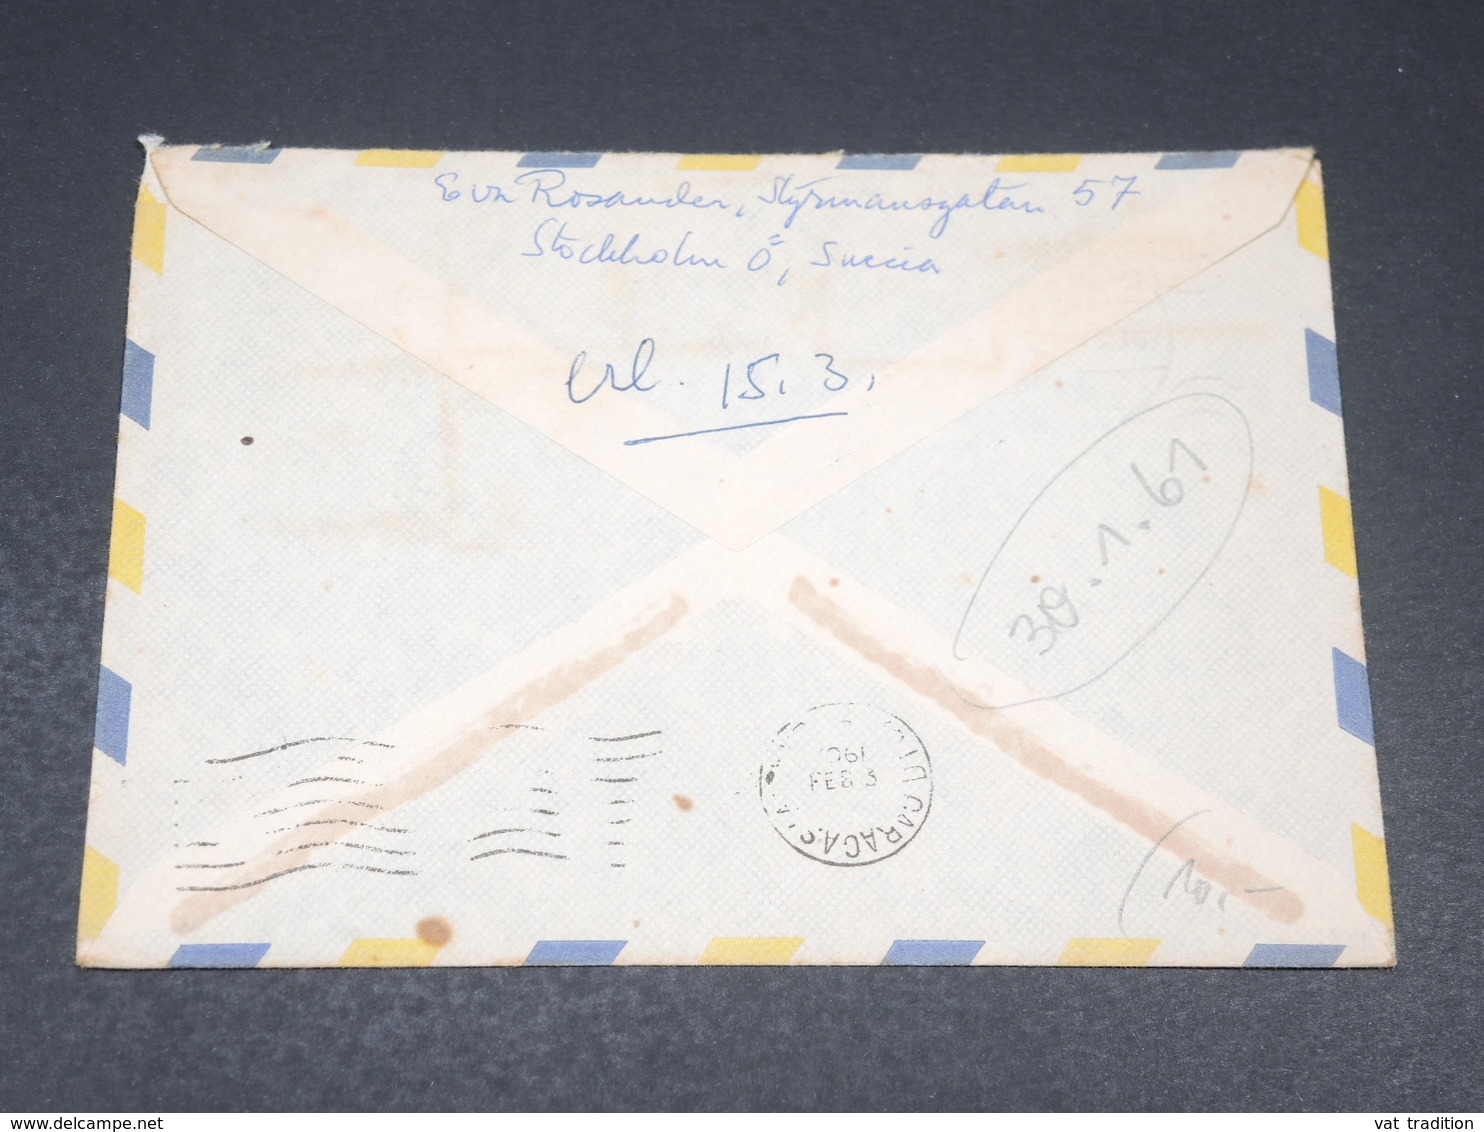 SUÈDE - Enveloppe De Stockholm Pour Caracas En 1961 - L 19629 - Briefe U. Dokumente